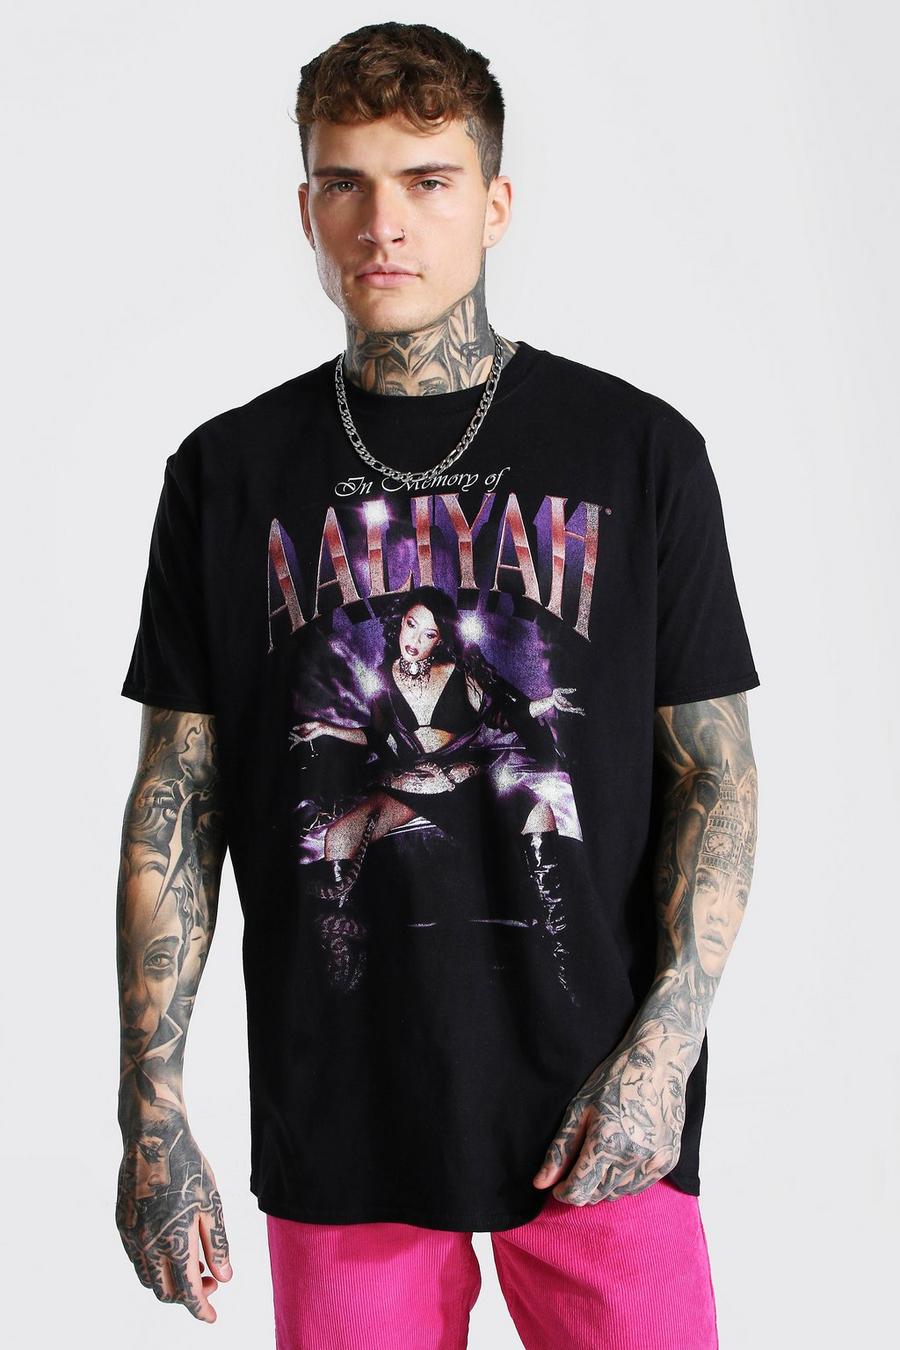 T-shirt oversize officiel Aaliyah, Black image number 1